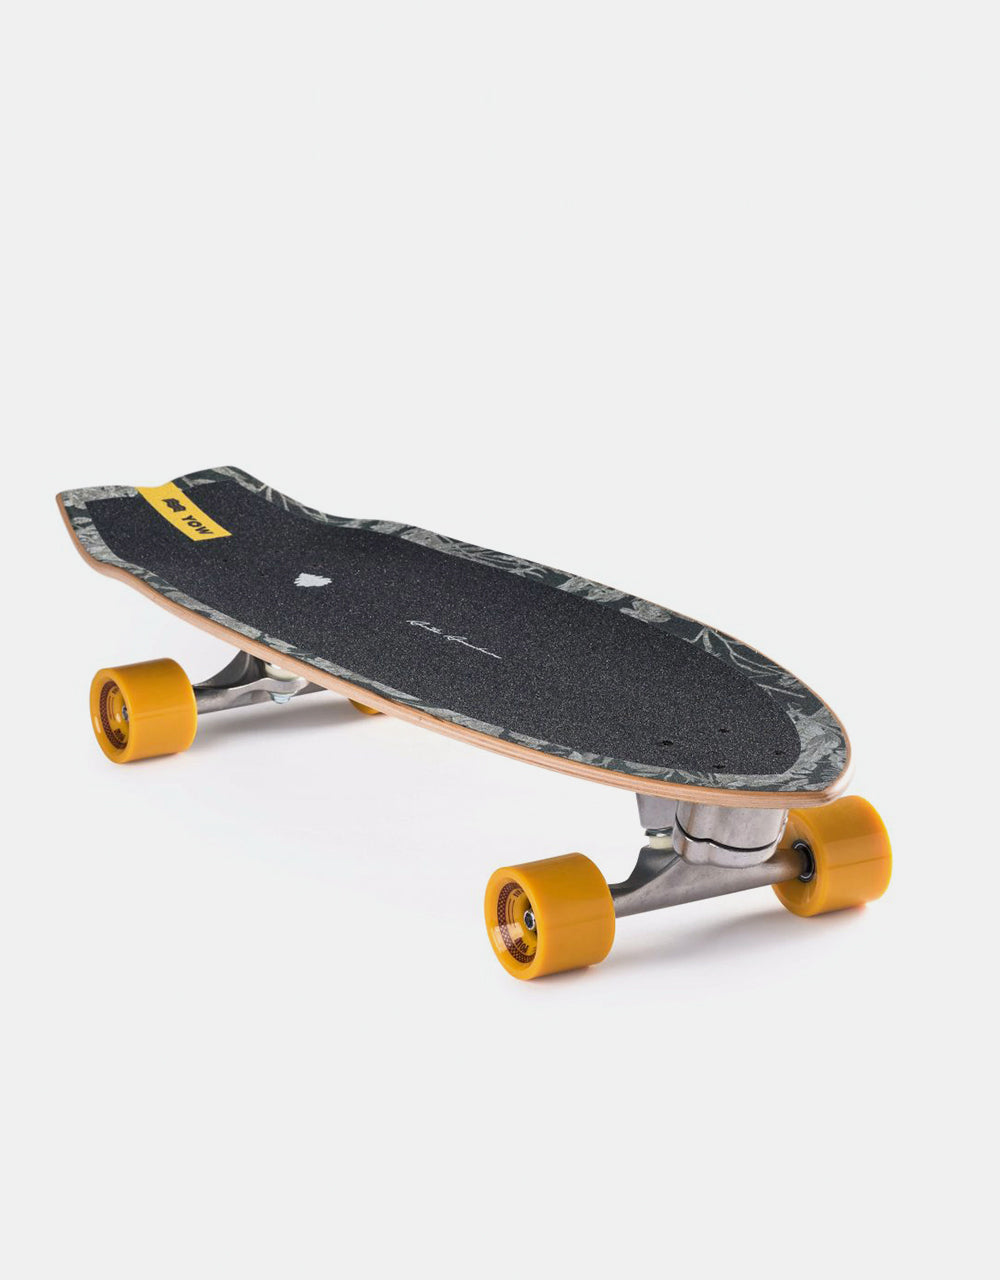 YOW Aritz Aranburu SurfSkate Cruiser Skateboard - 10" x 32.5"